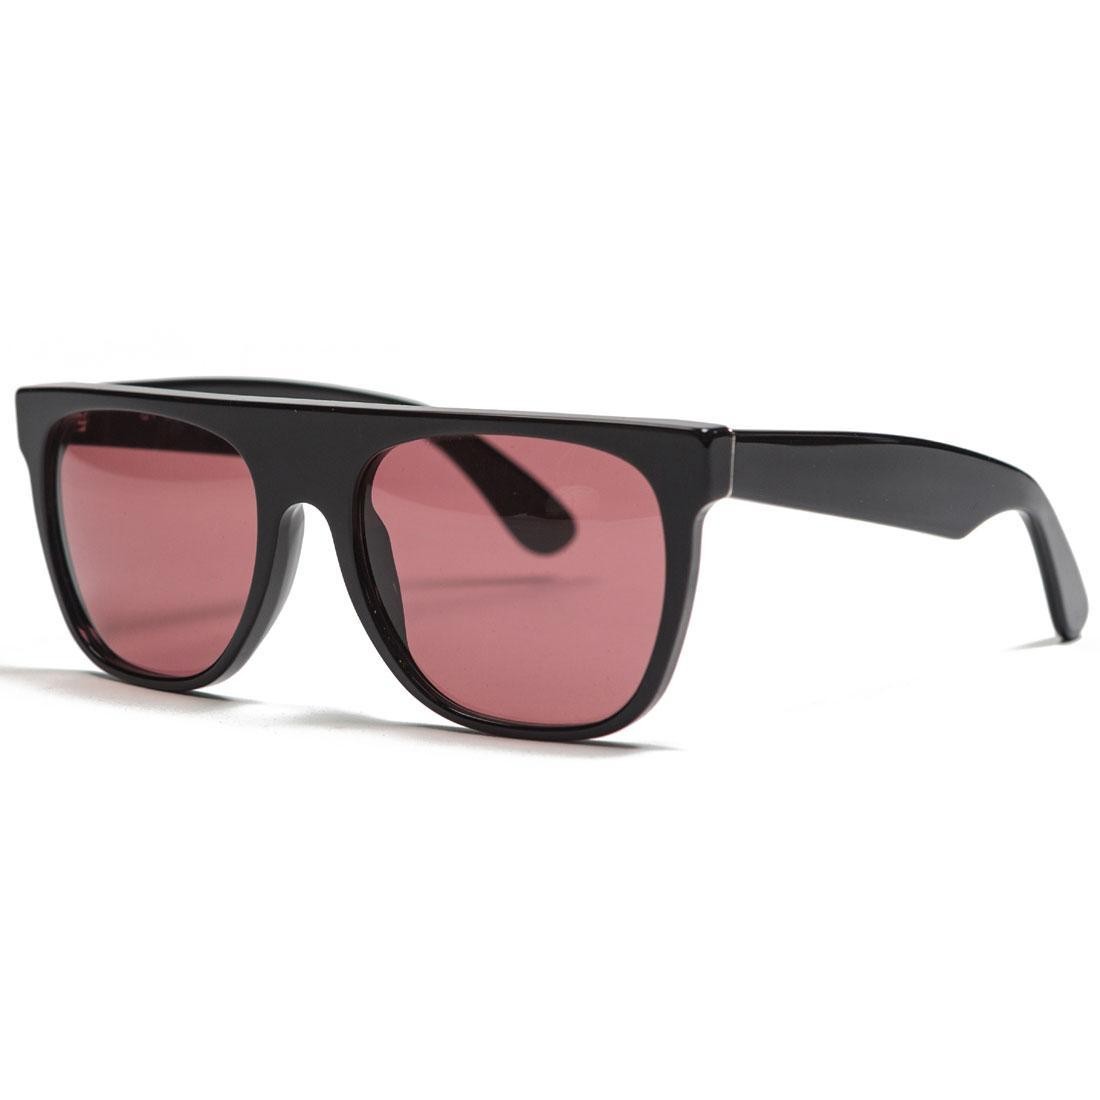 Super Sunglasses Flat Top Sunglasses (black / bordeaux)